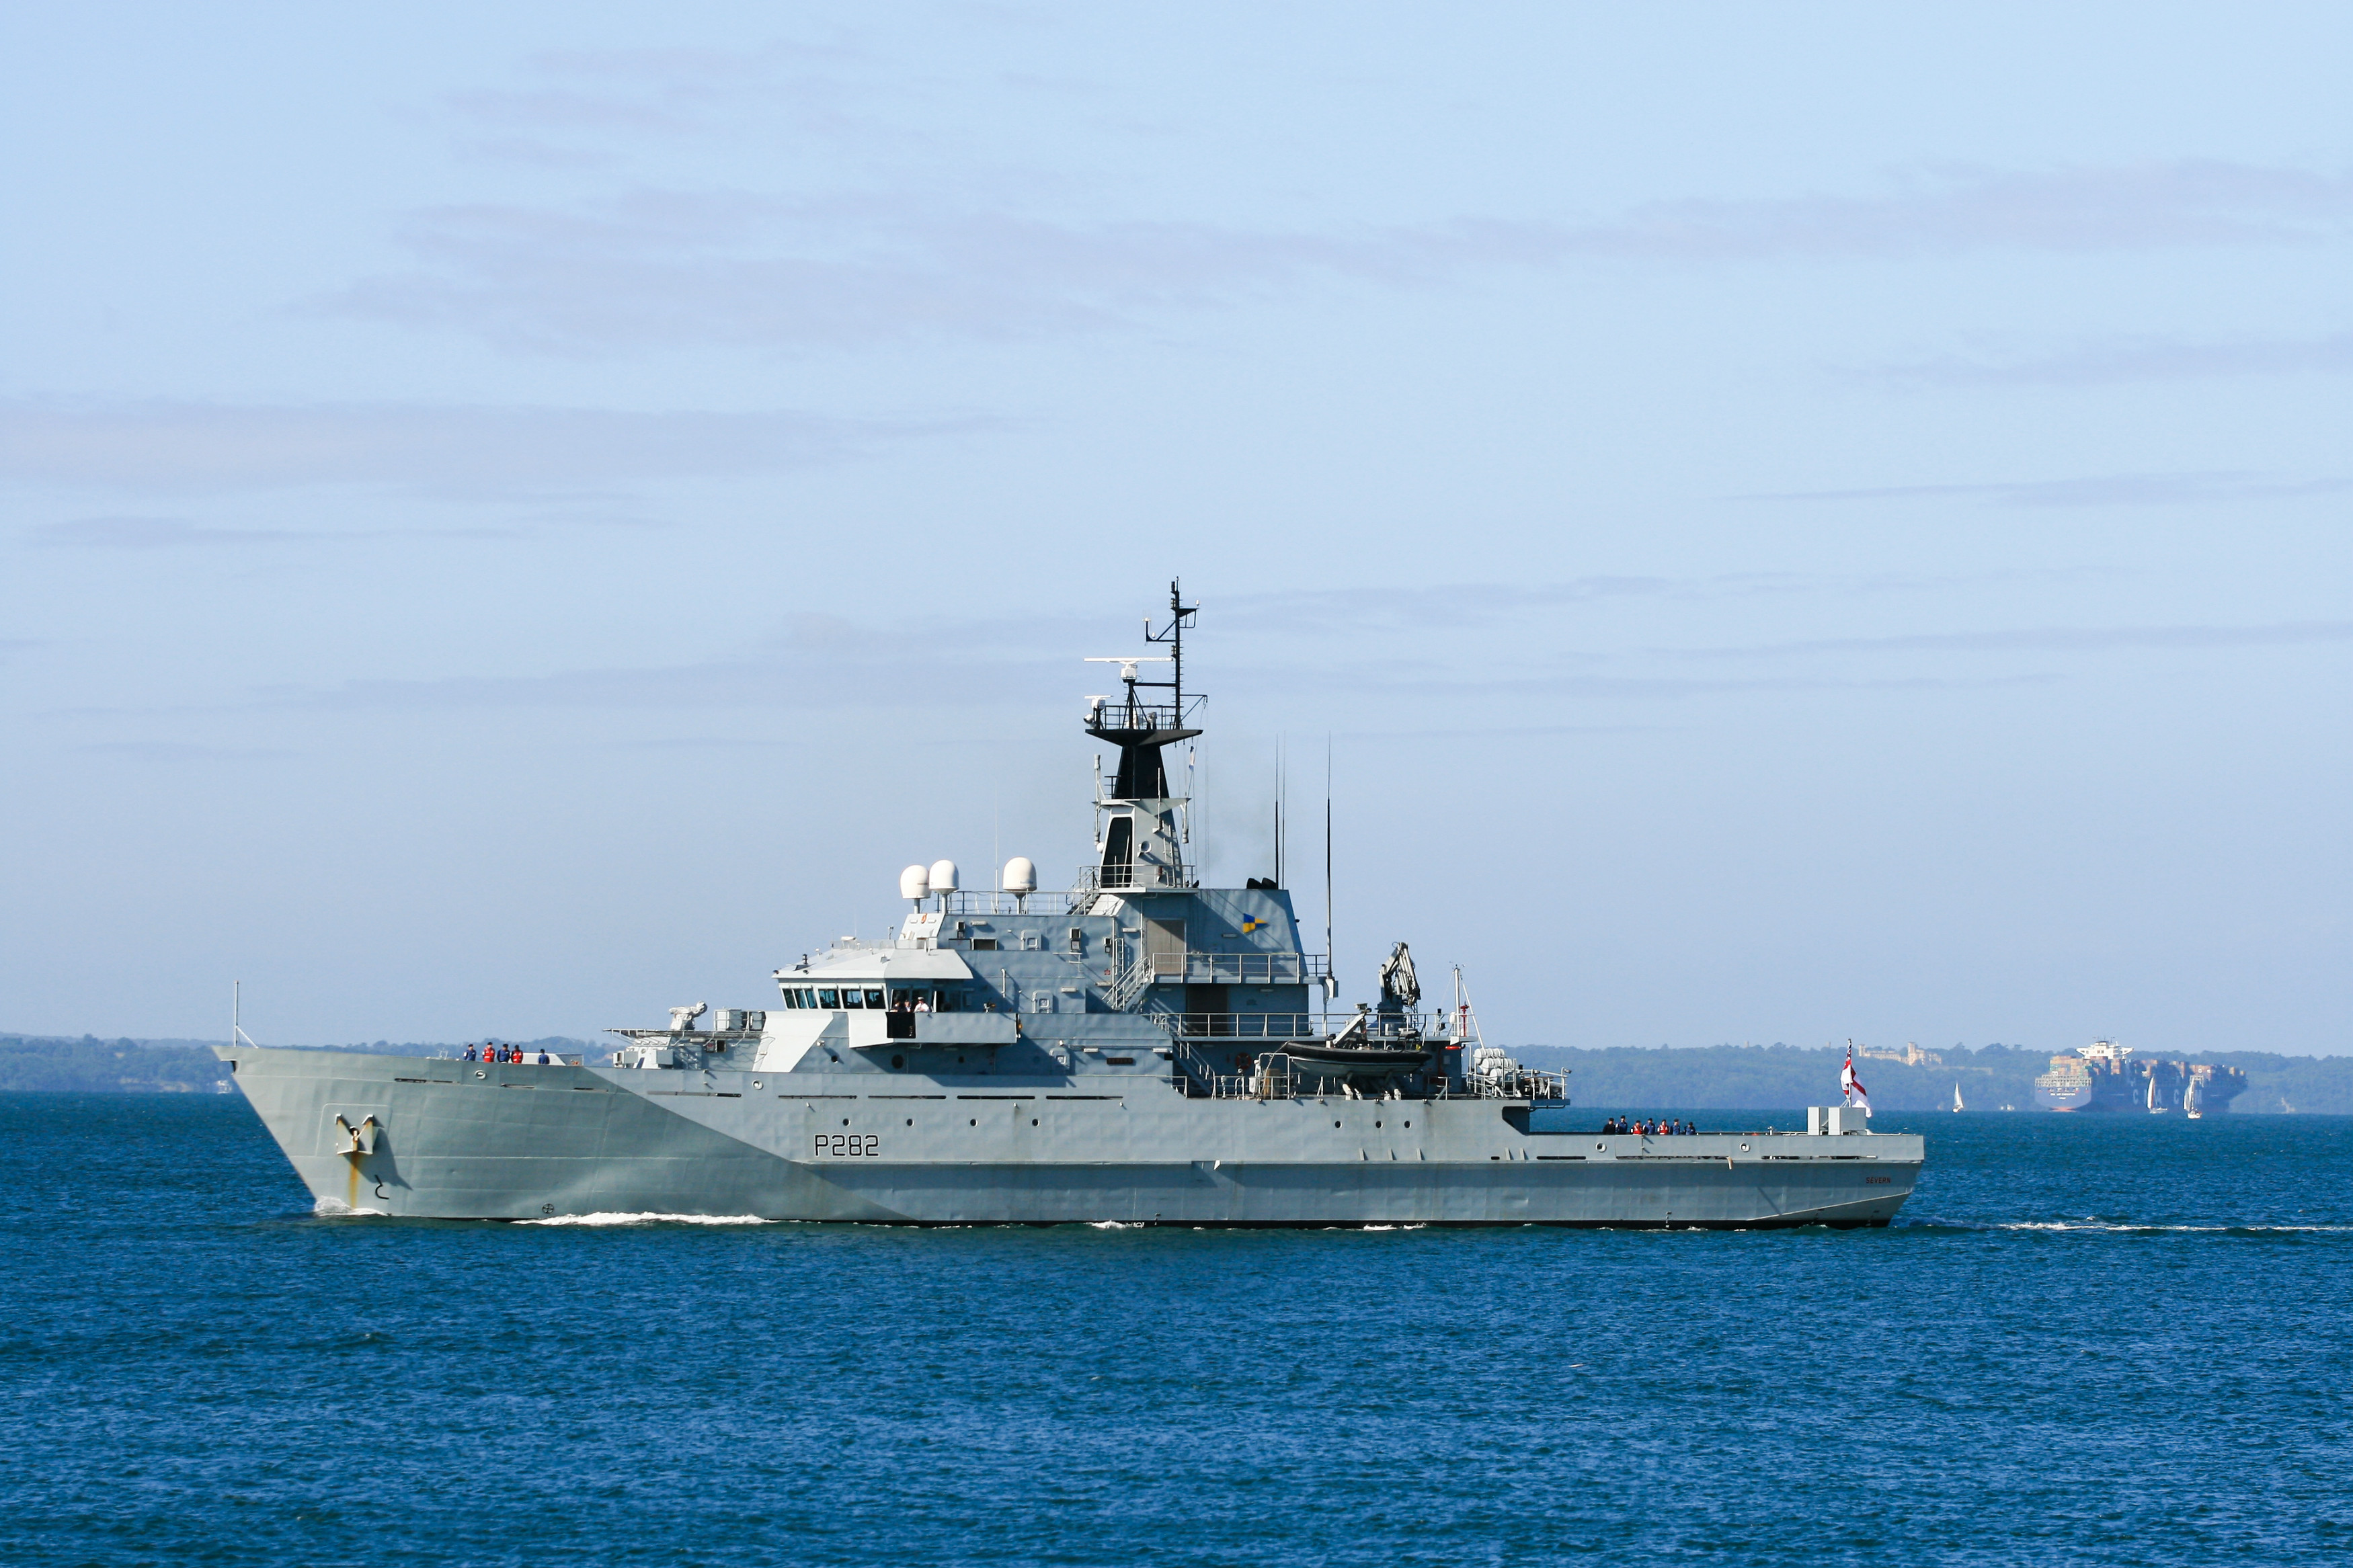 俄4艘军舰通过英吉利海峡 英国海军派2艘巡逻舰跟踪